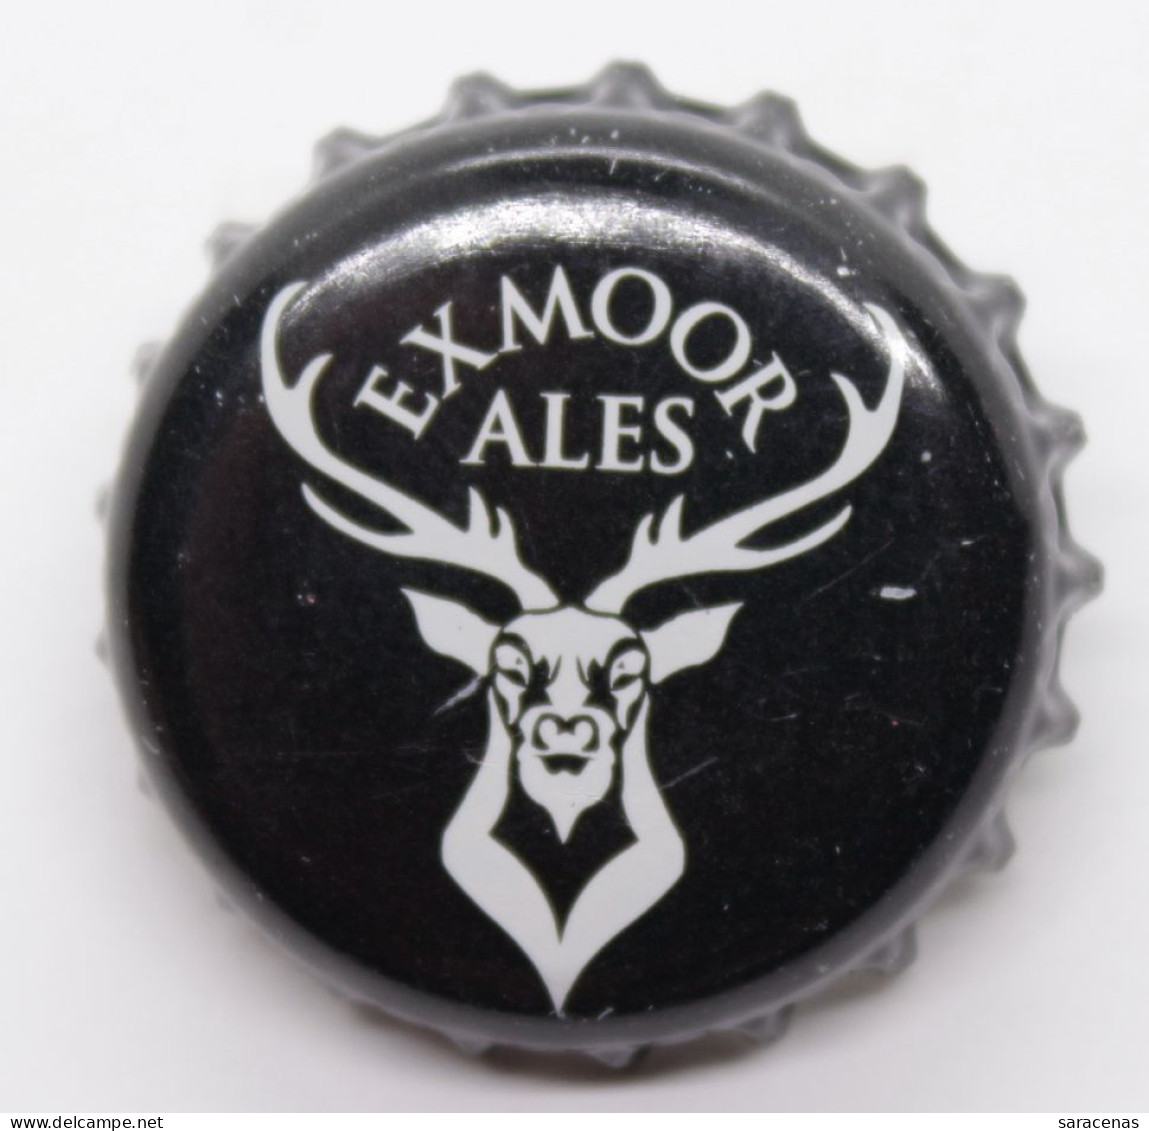 United Kingdom Exmoor Ales Beer Beer Bottle Cap - Beer